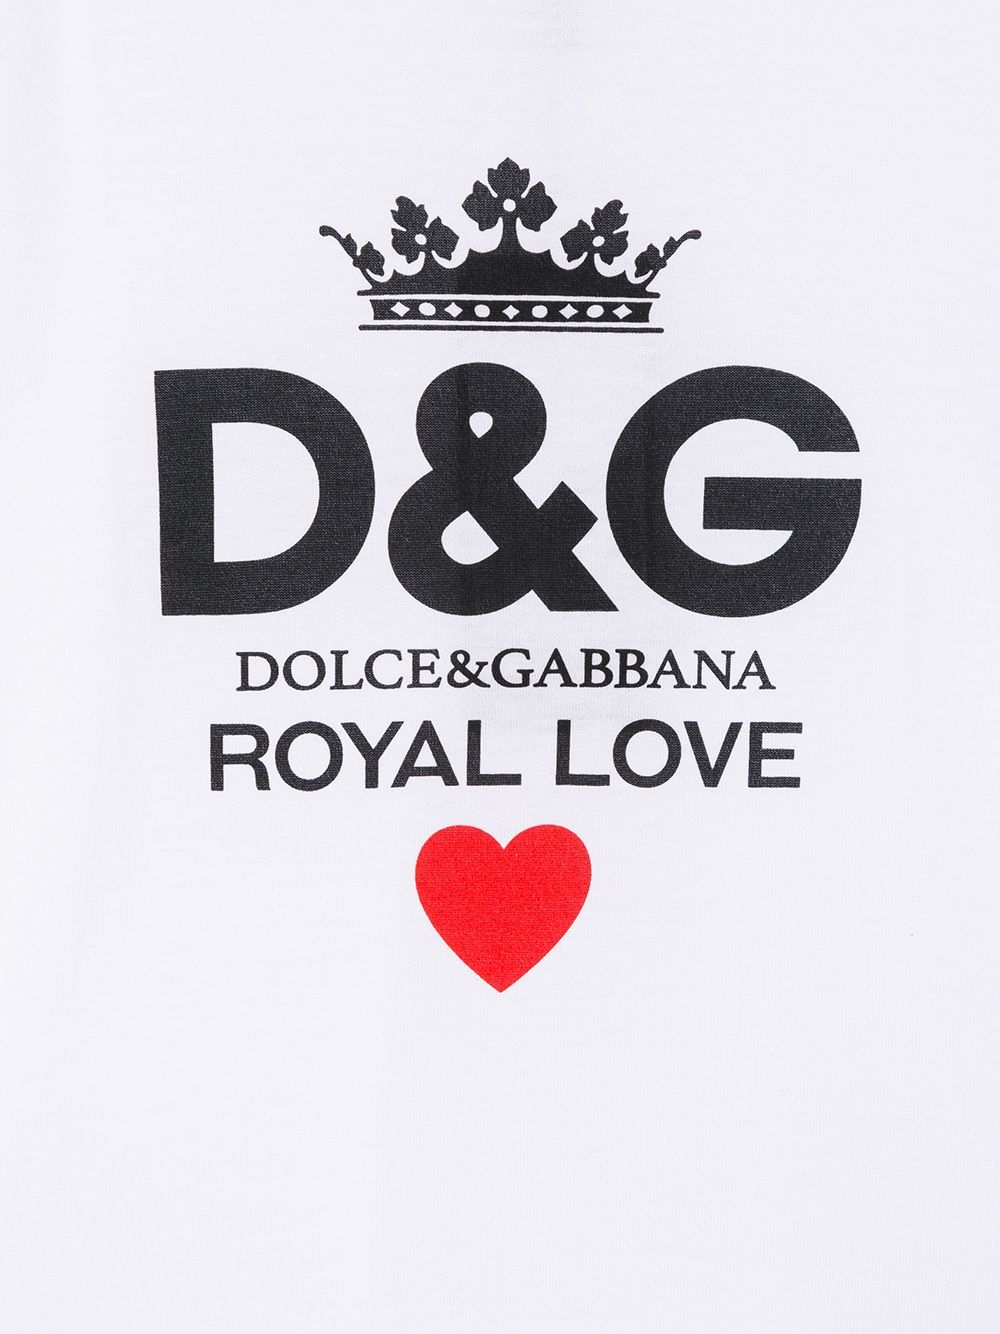 Детские одежда, обувь, аксессуары Dolce&Gabbana